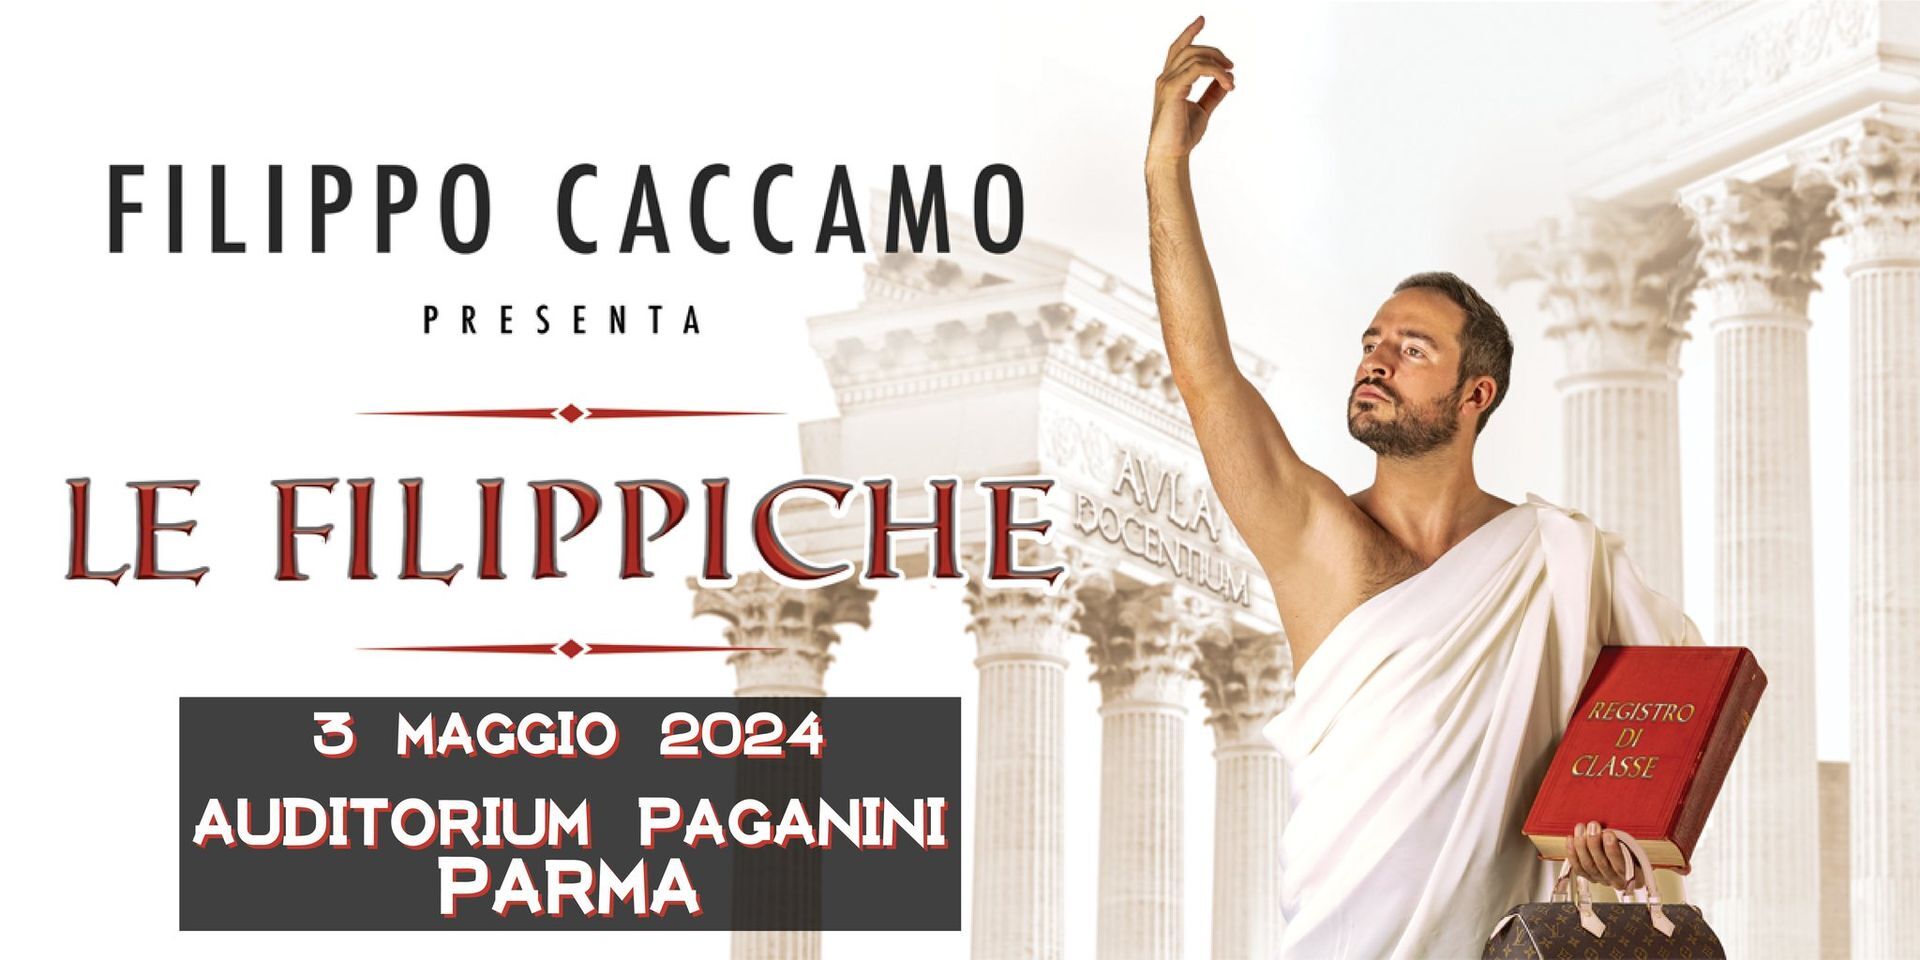 FILIPPO CACCAMO  "LE FILIPPICHE"  all' Auditorium Paganini, Parma